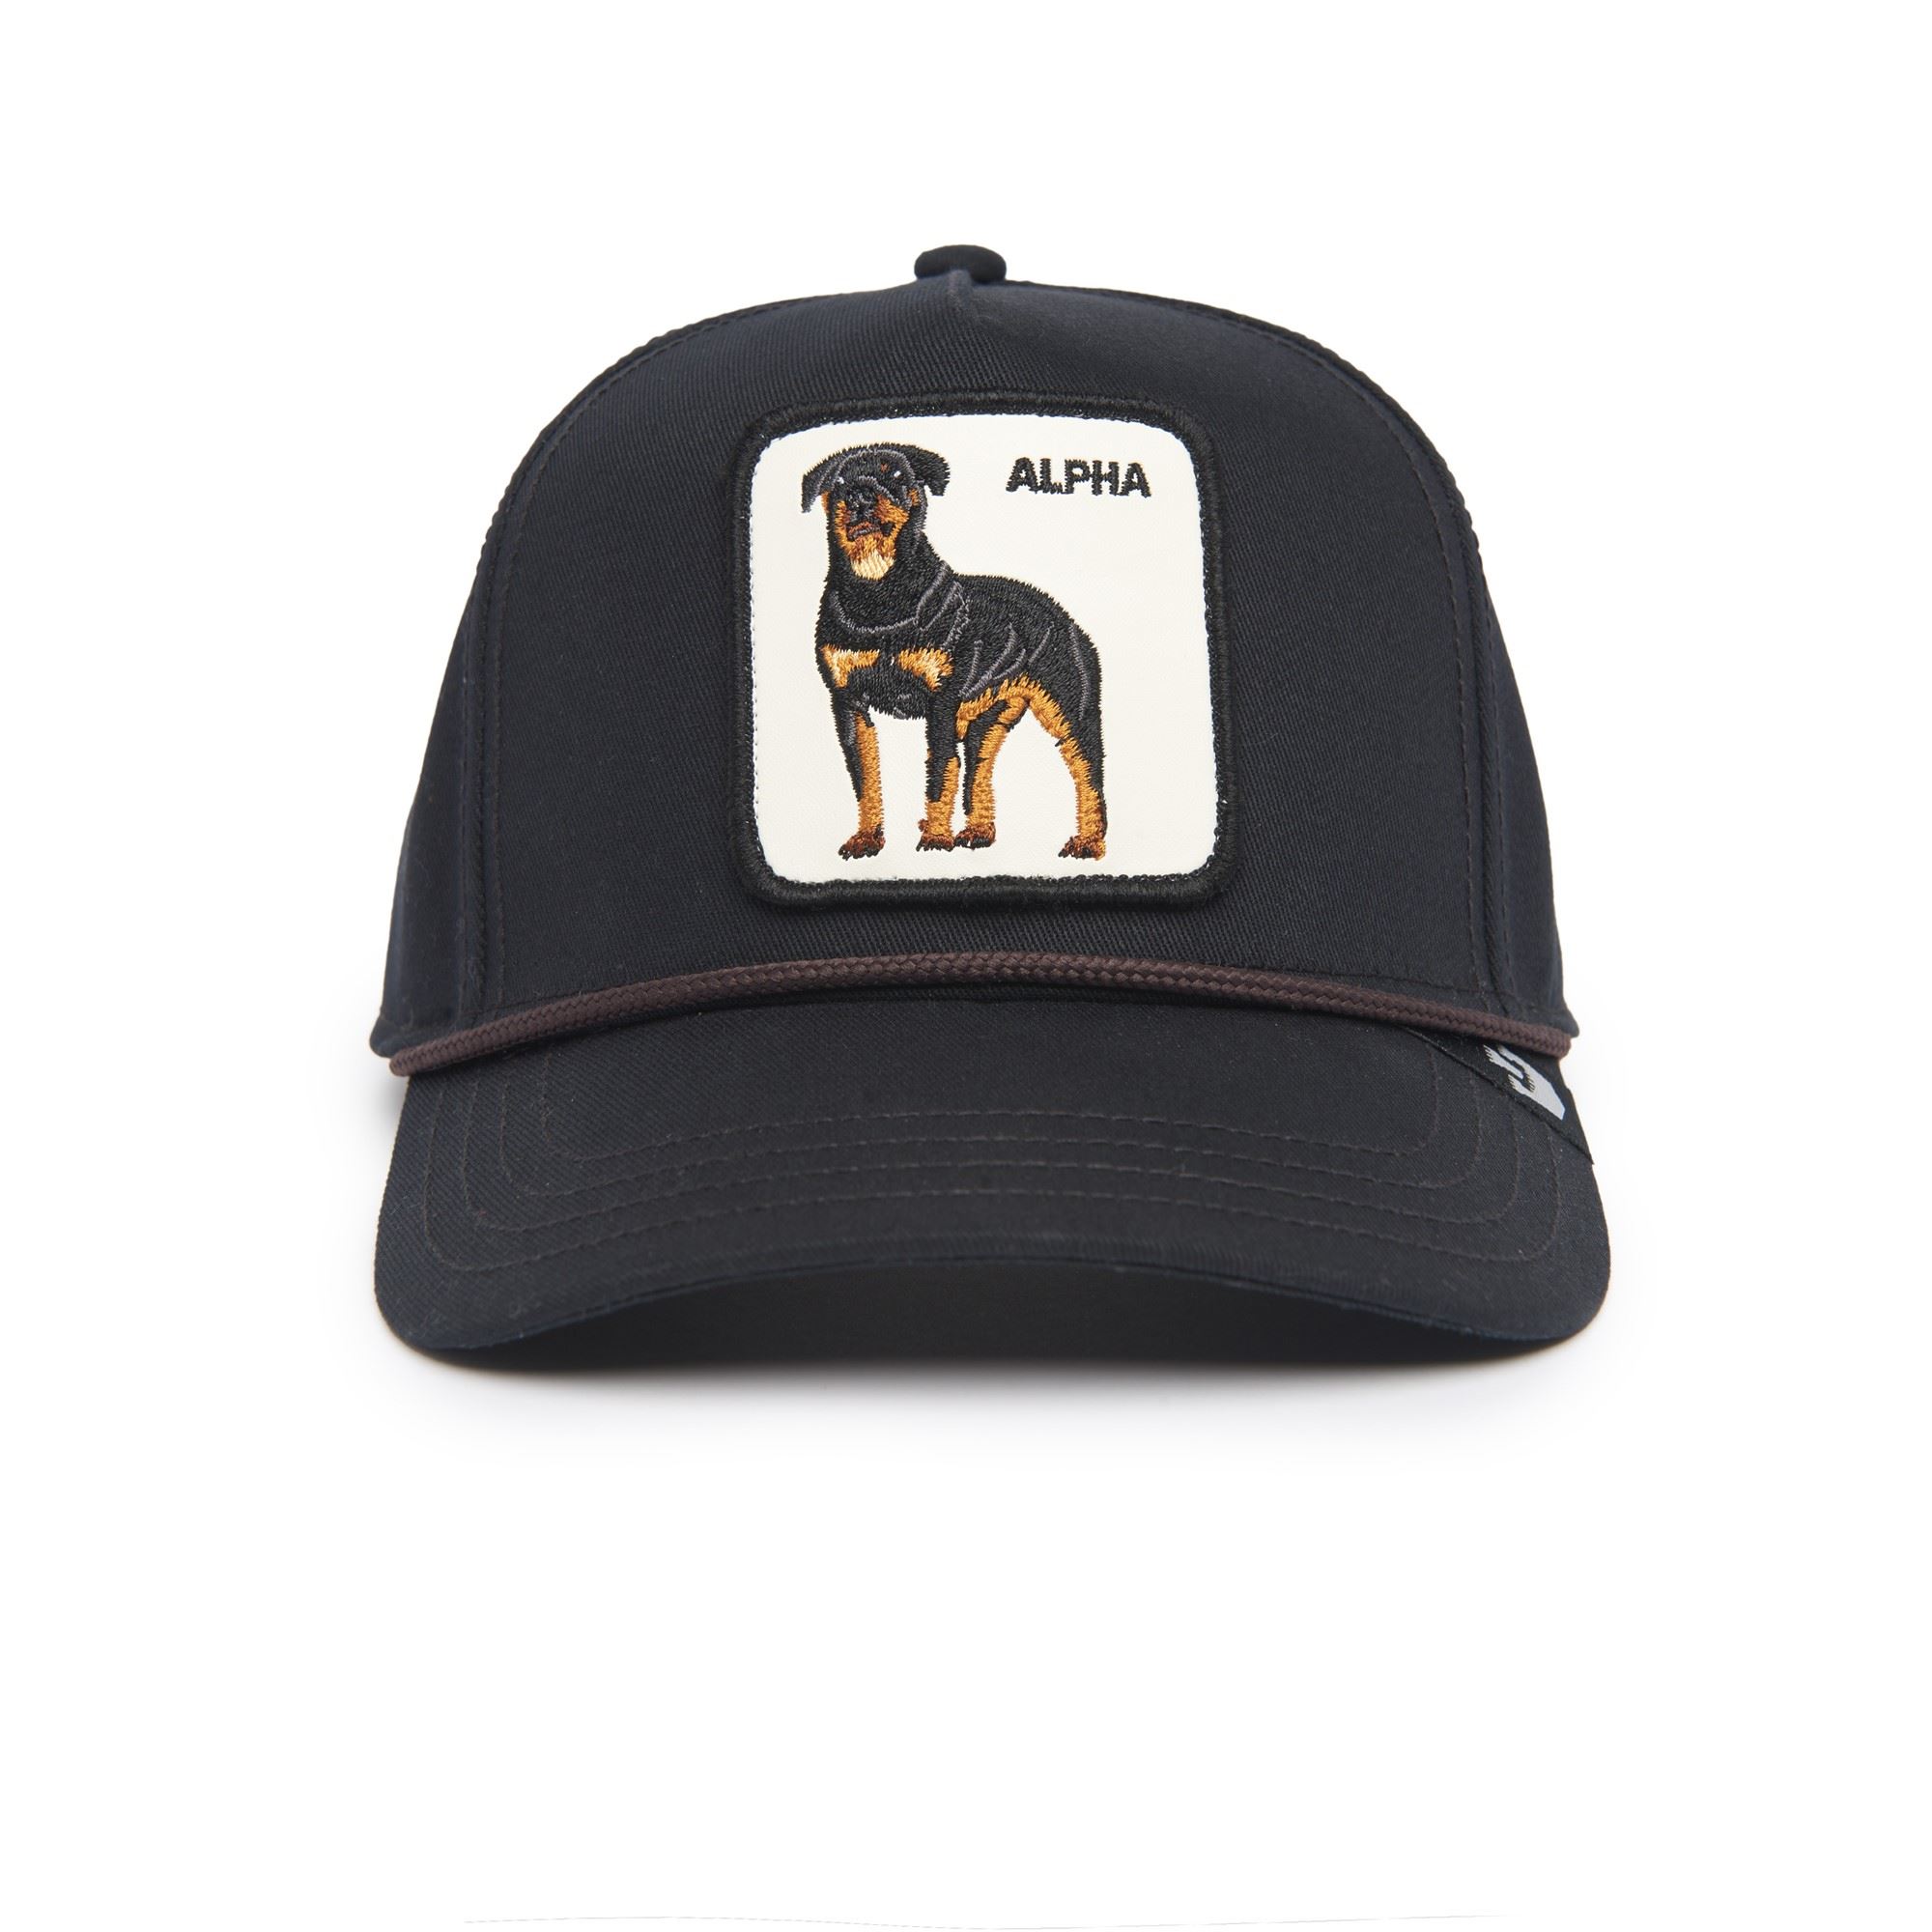 Alpha Dog Hund Schwarz Verstellbare Snapback Cap Goorin Bros